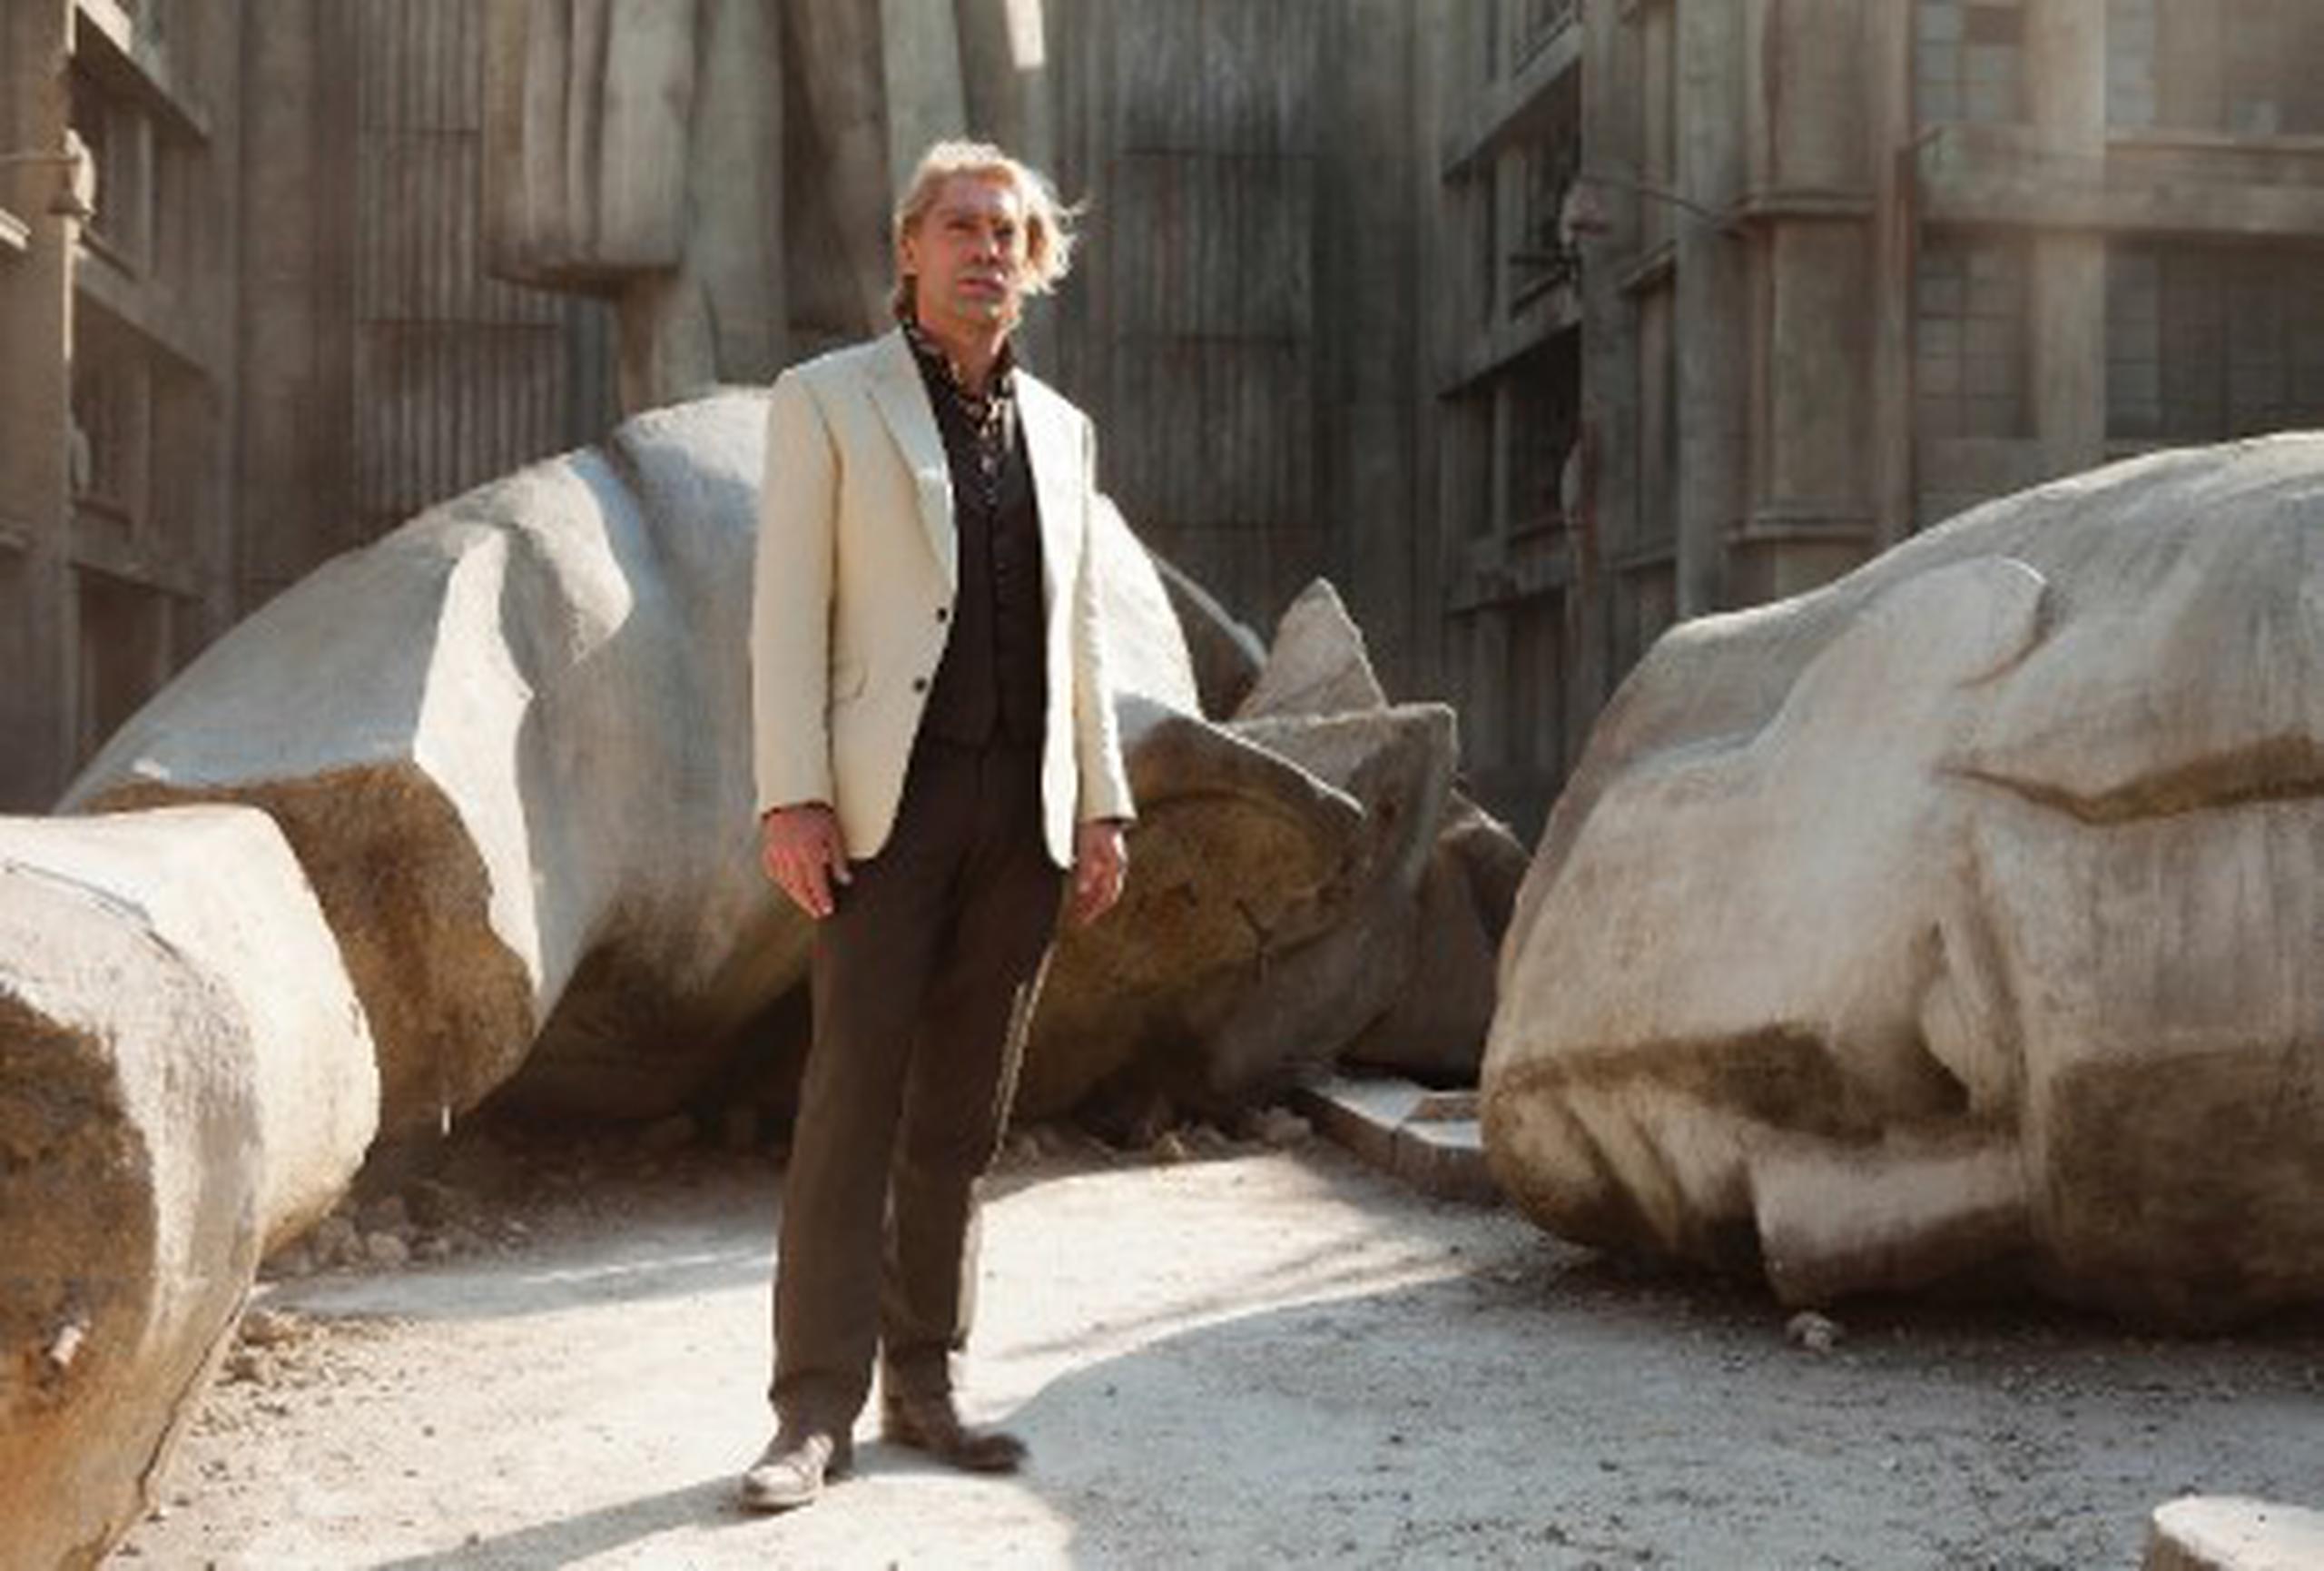 El actor español Javier Bardem en su papel de villano en la última película de James Bond, Skyfall. (Archivo)